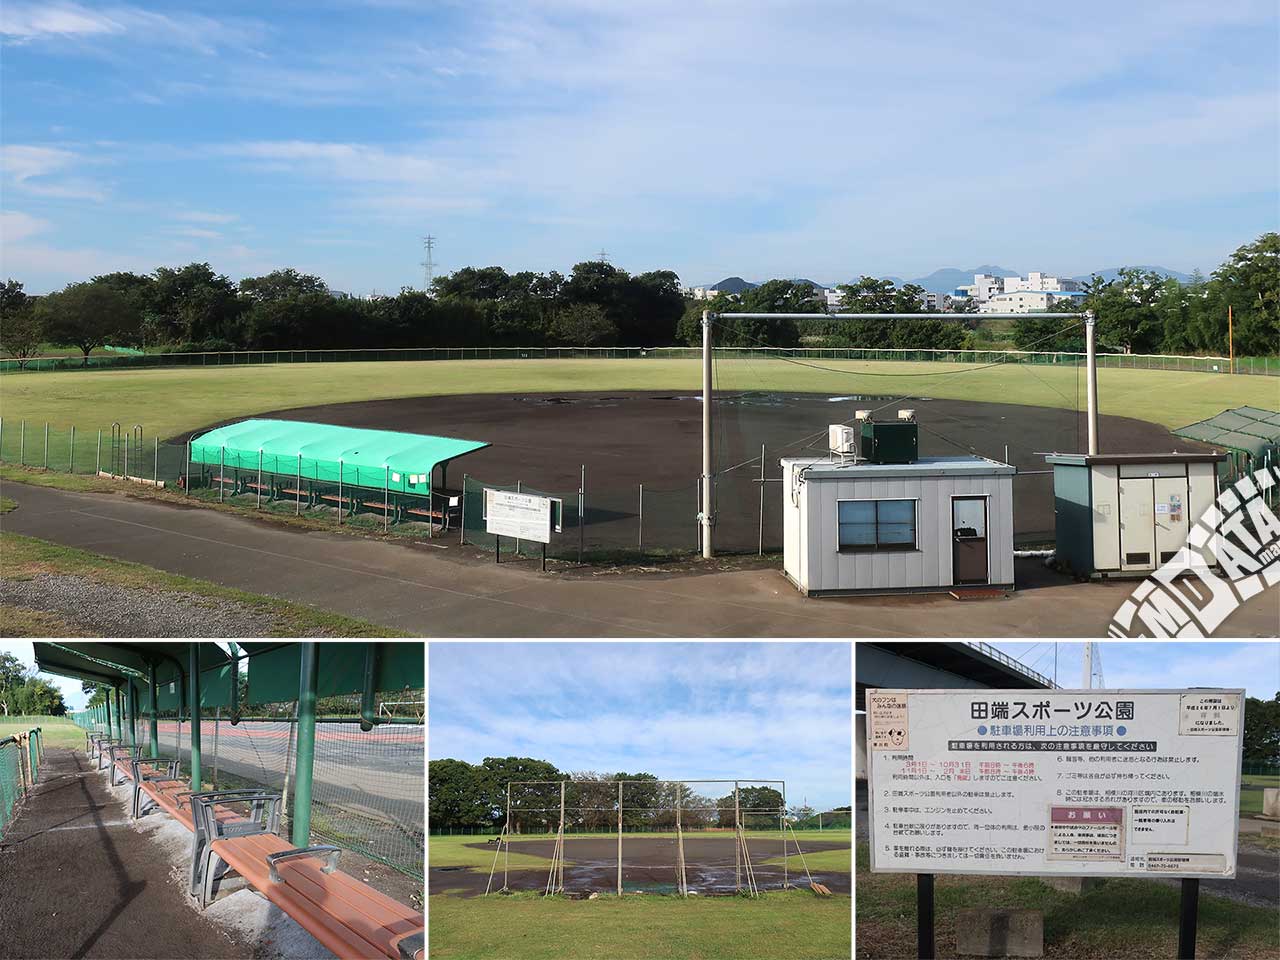 田端スポーツ公園野球場の写真 Photo taken on 2022/10/11